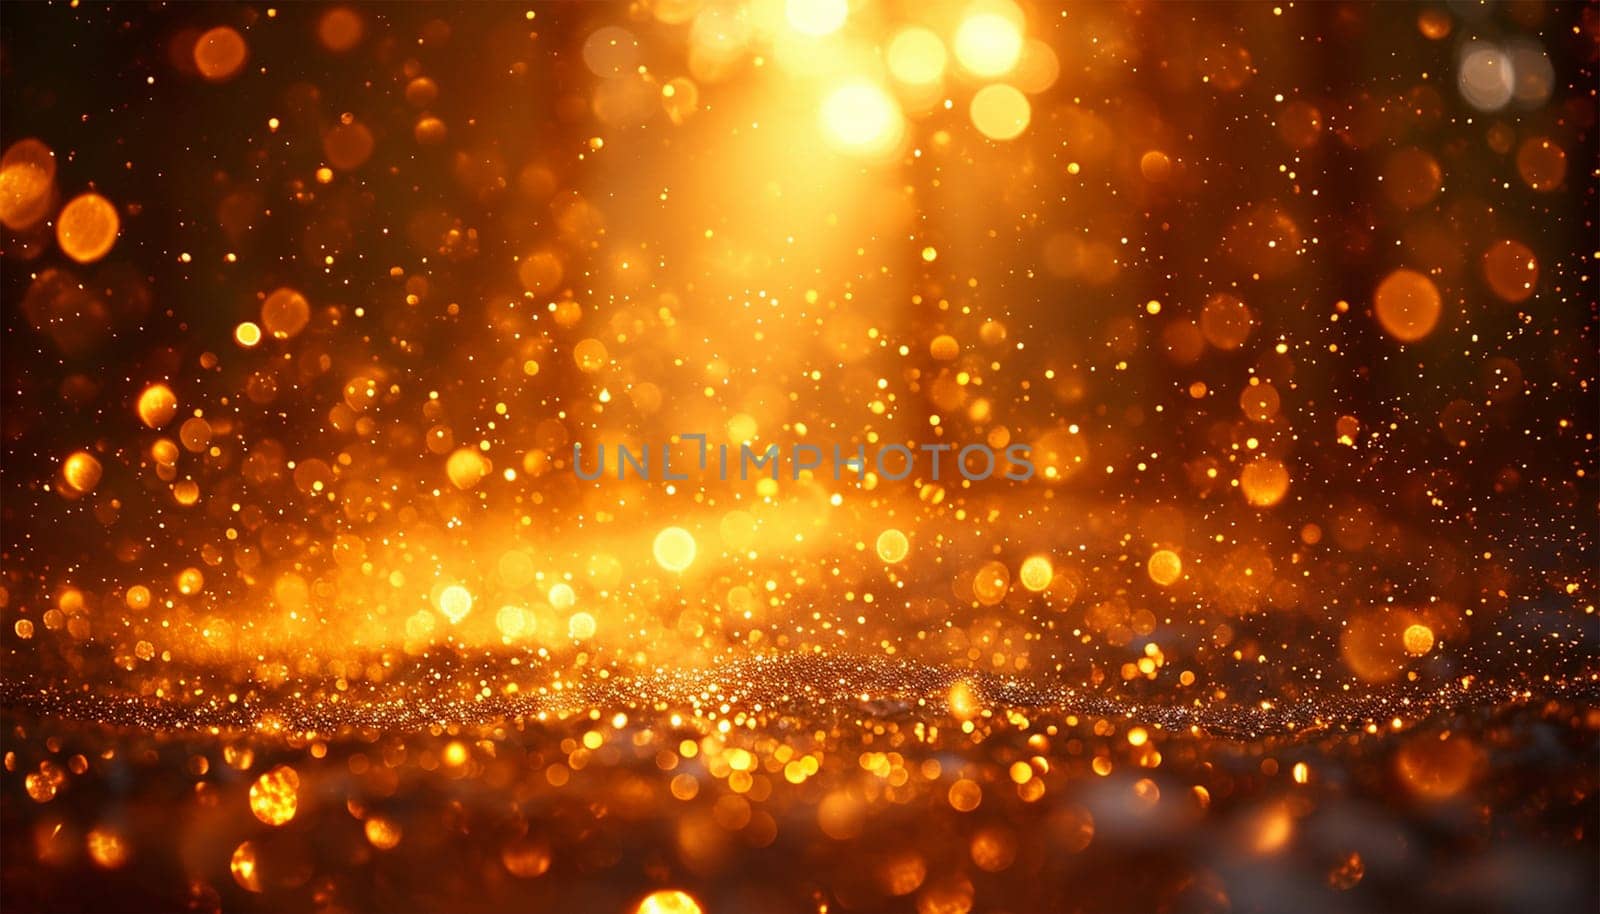 Gold sparkling glitter lights bokeh background. Abstract glitter lights background. de-focused Copy space. Festove, celebrationn design by Annebel146